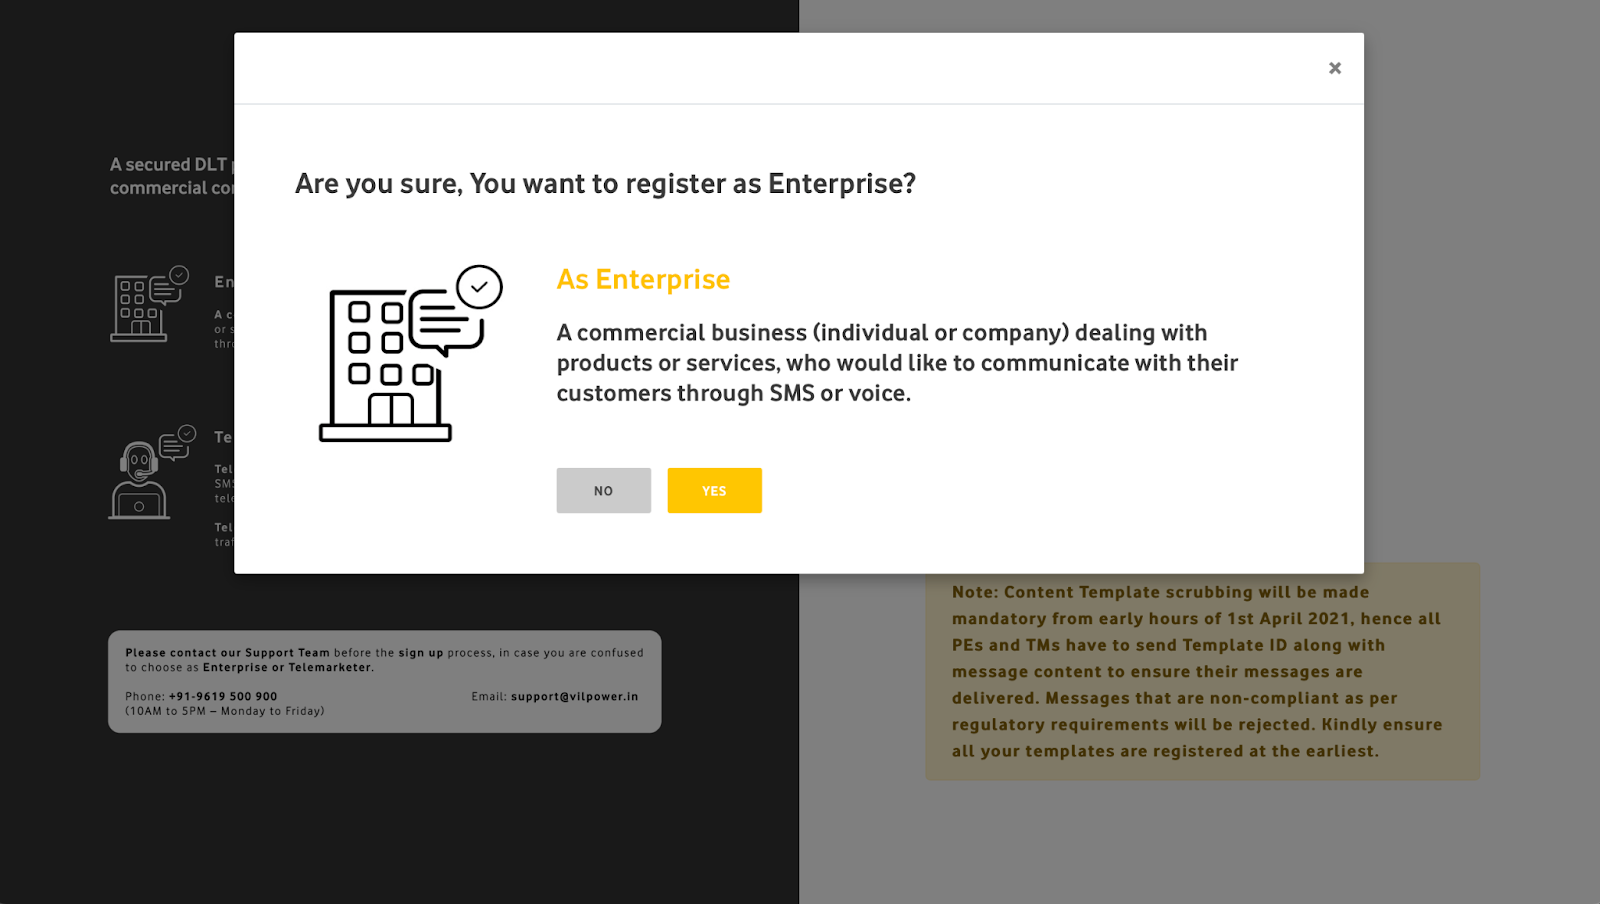 Pop up question on Vodafone DLT registration page for enterprises